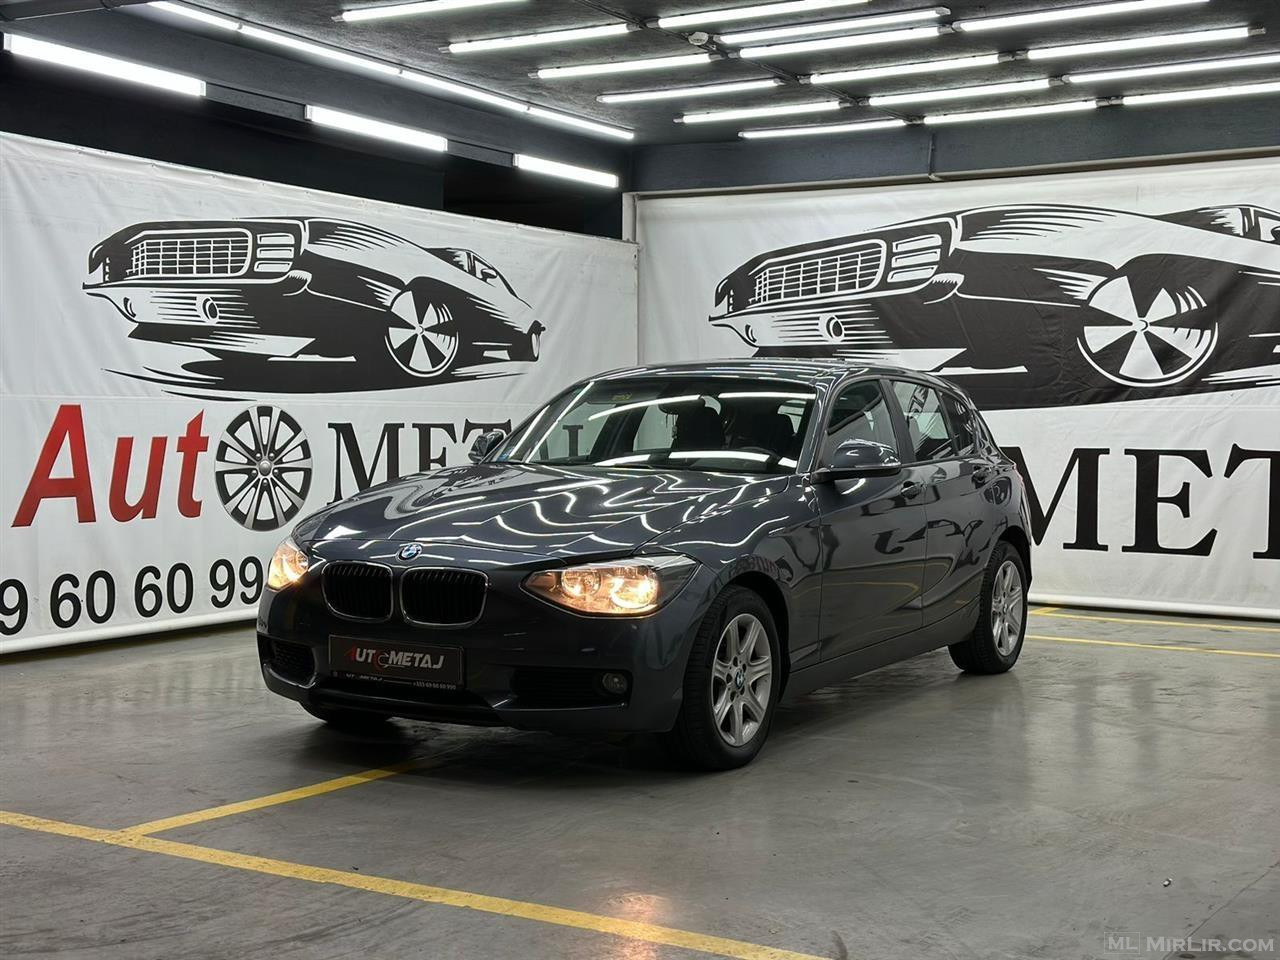  BMW Seria 1  Viti Prodhimit Fundi 2014  2.0 Diesel 